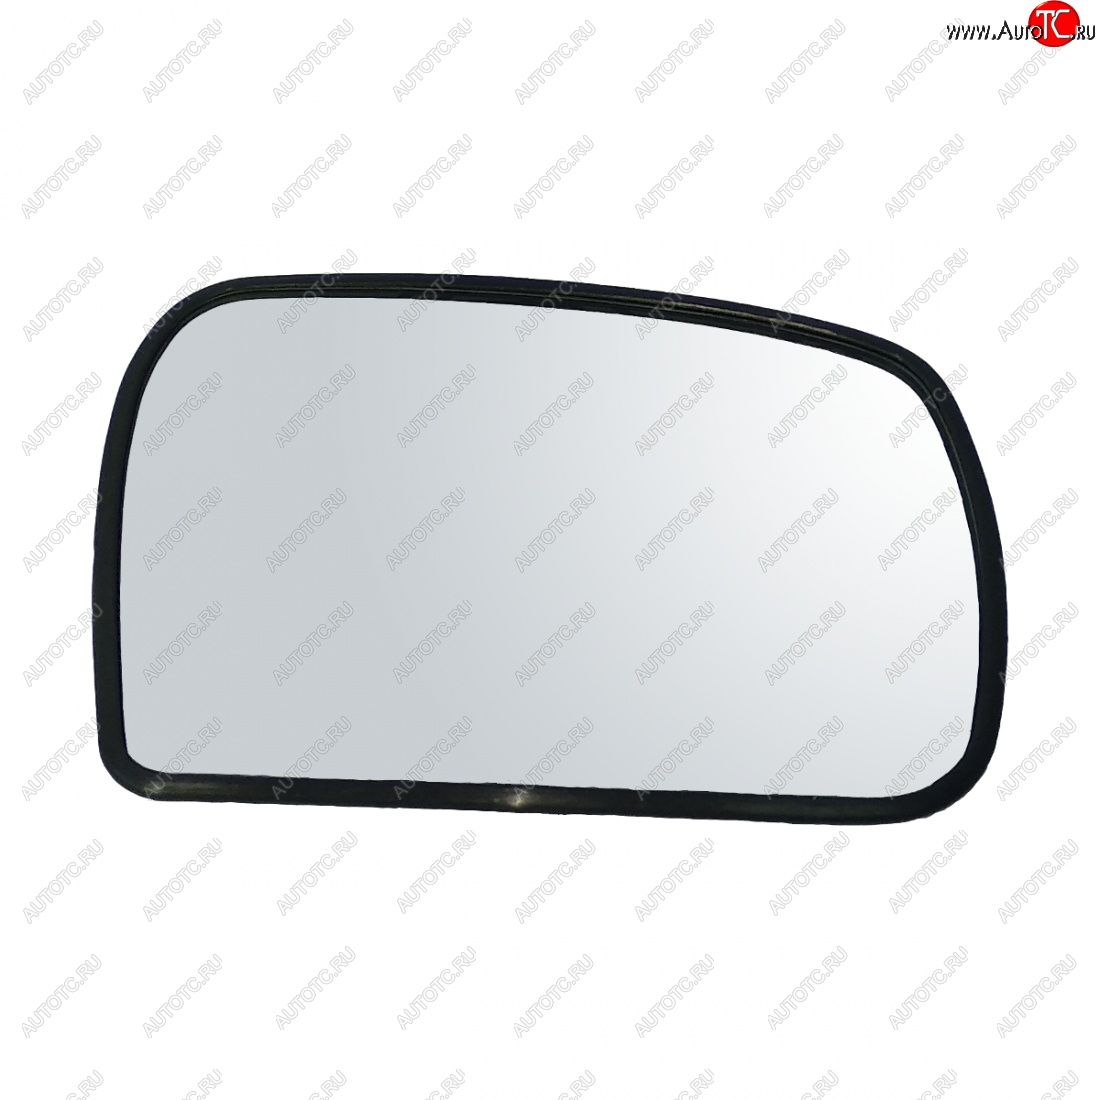 419 р. Правый зеркальный элемент (обогрев/под квадр.моторедуктор) AutoBlik2  Chevrolet Niva  2123 (2009-2020) (без антибликового покрытия)